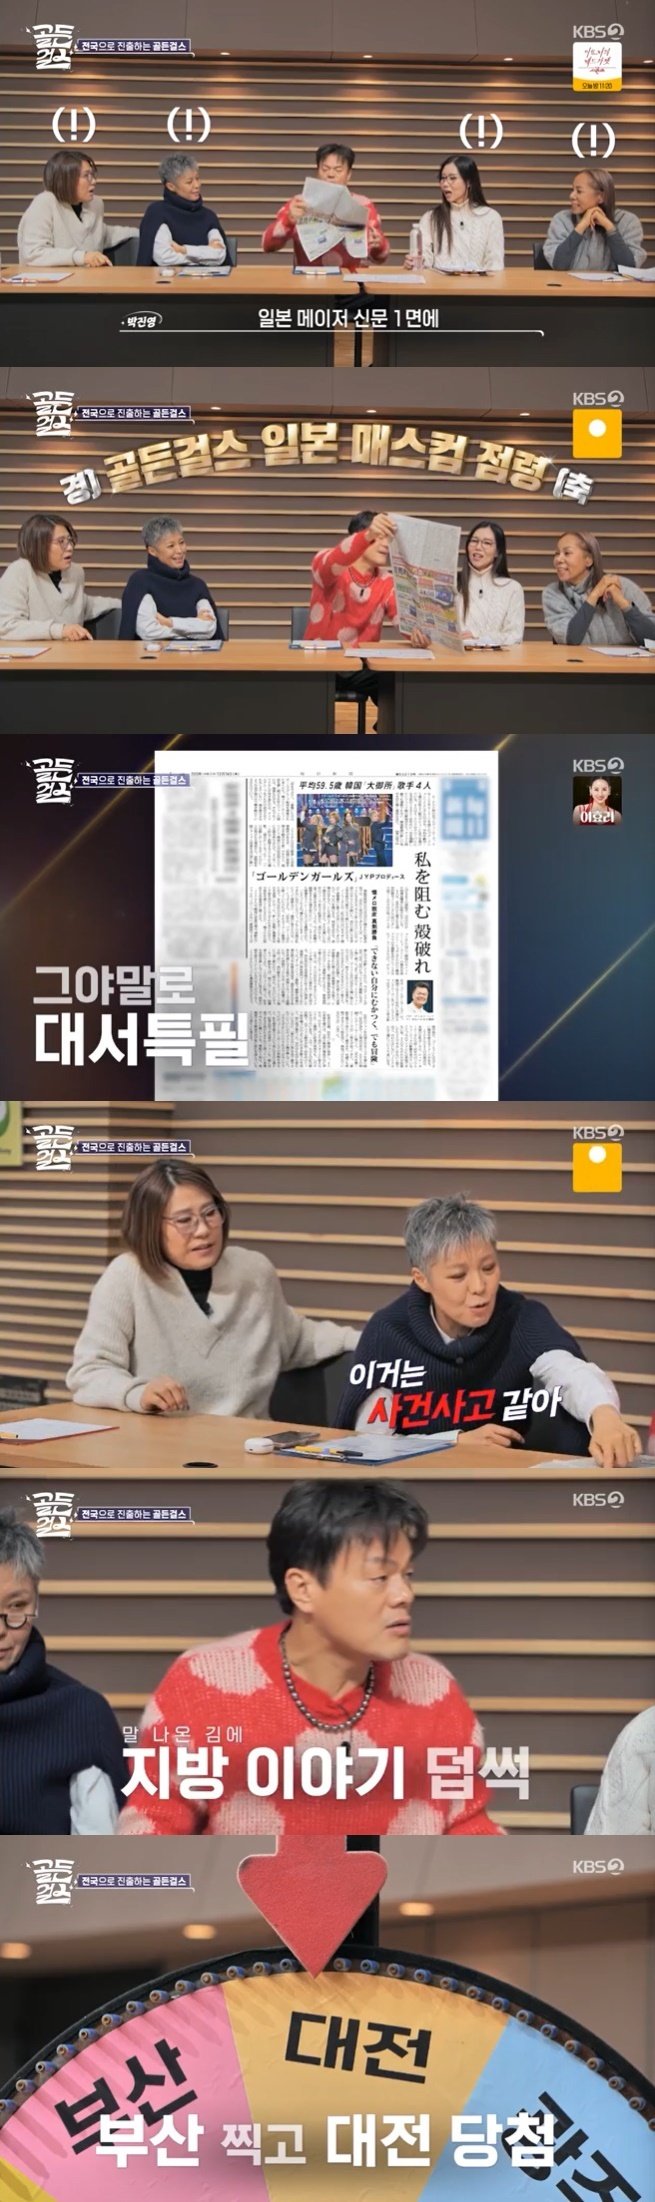 KBS 2TV '골든걸스' 캡처